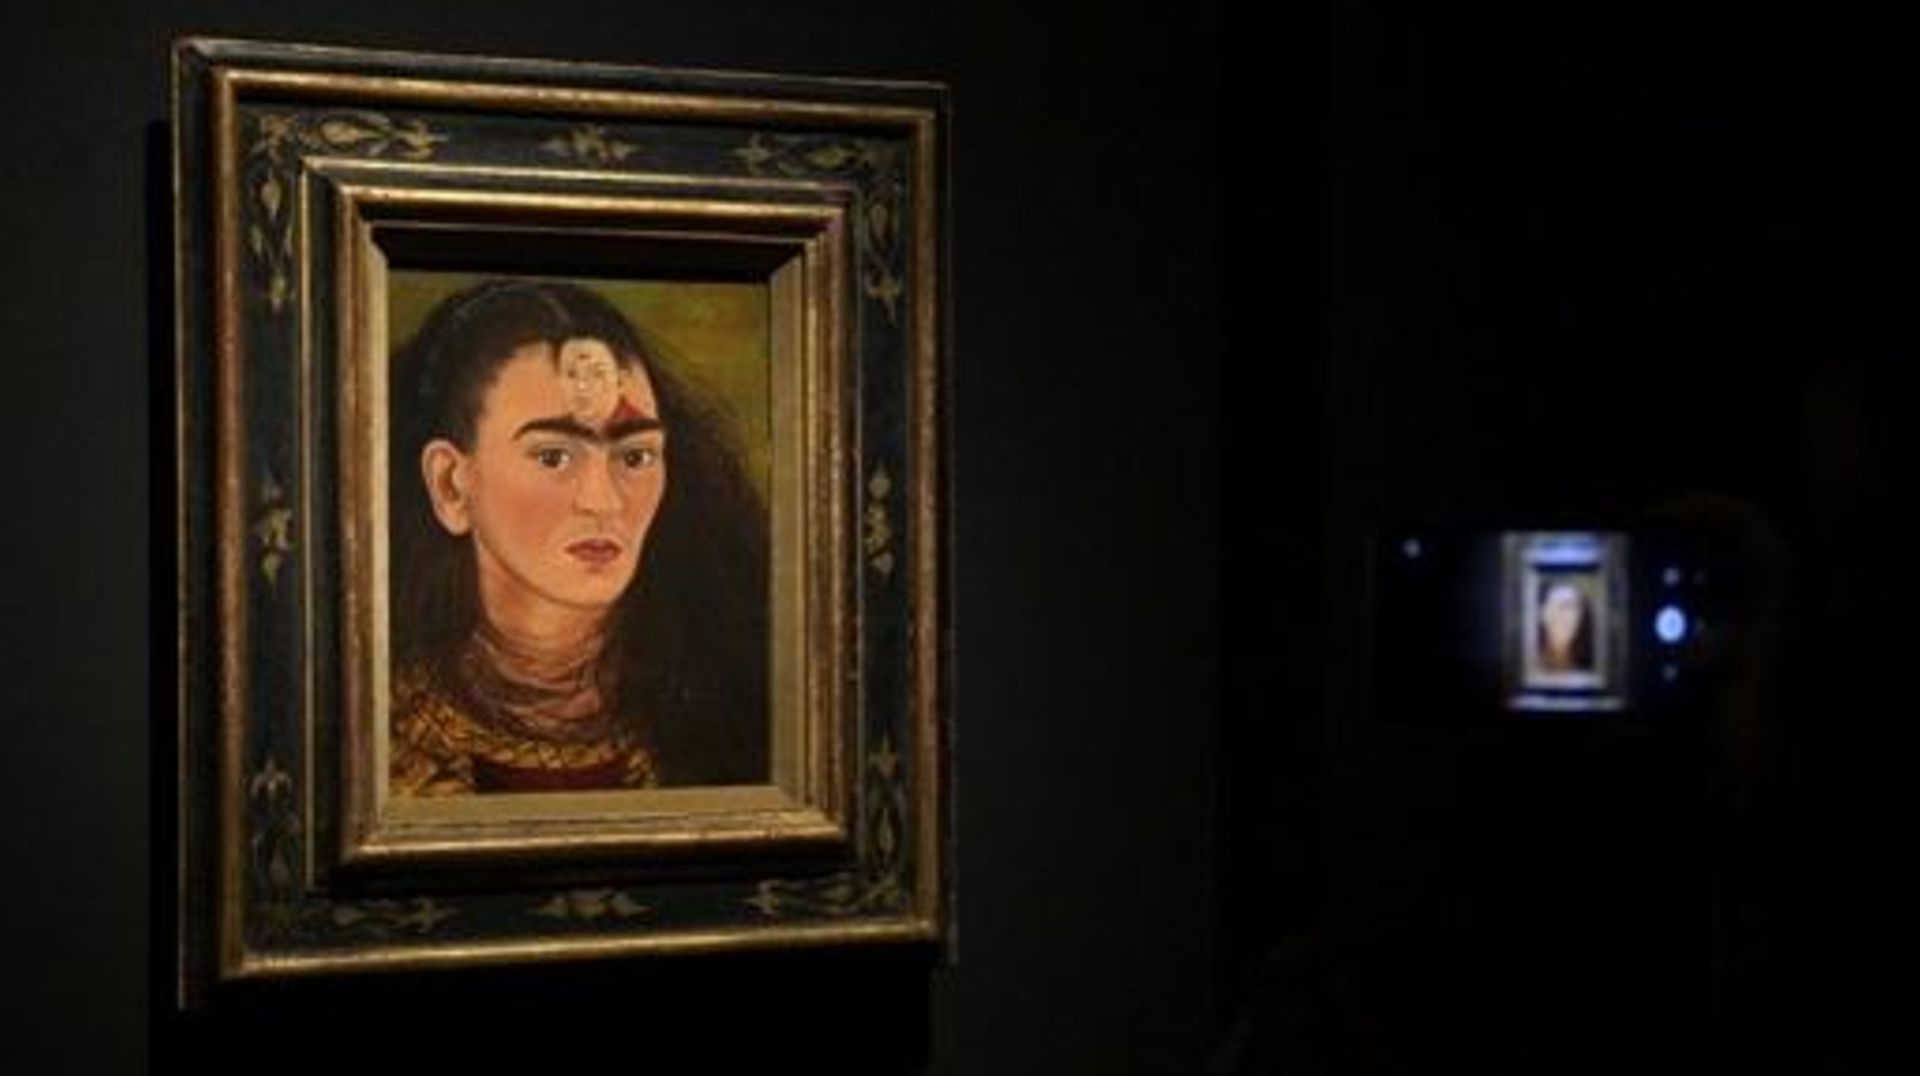 Argentine : un autoportrait culte de Frida Kahlo visible pour la première fois en 25 ans